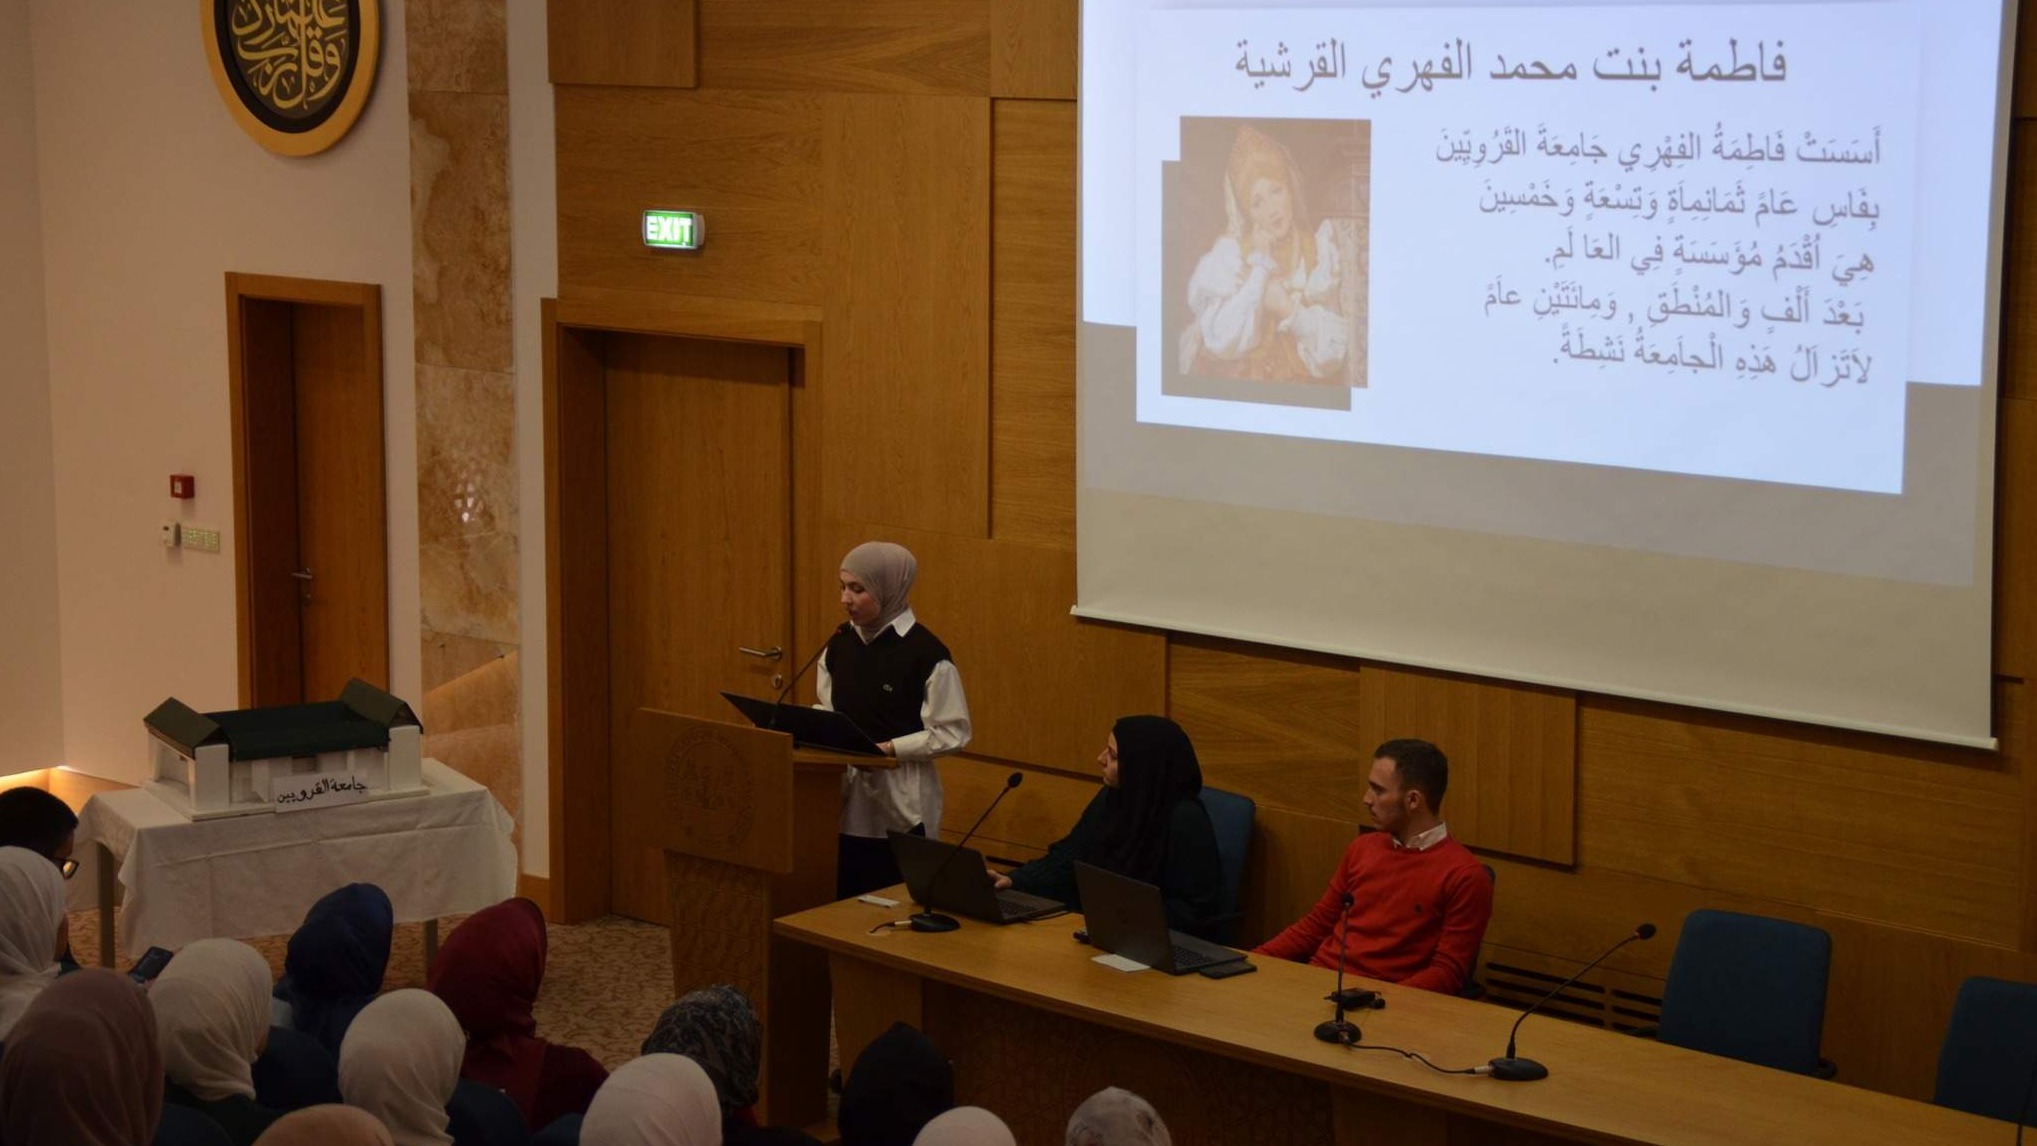 Dan arapskog jezika obilježen u Gazi Husrev-begovoj medresi